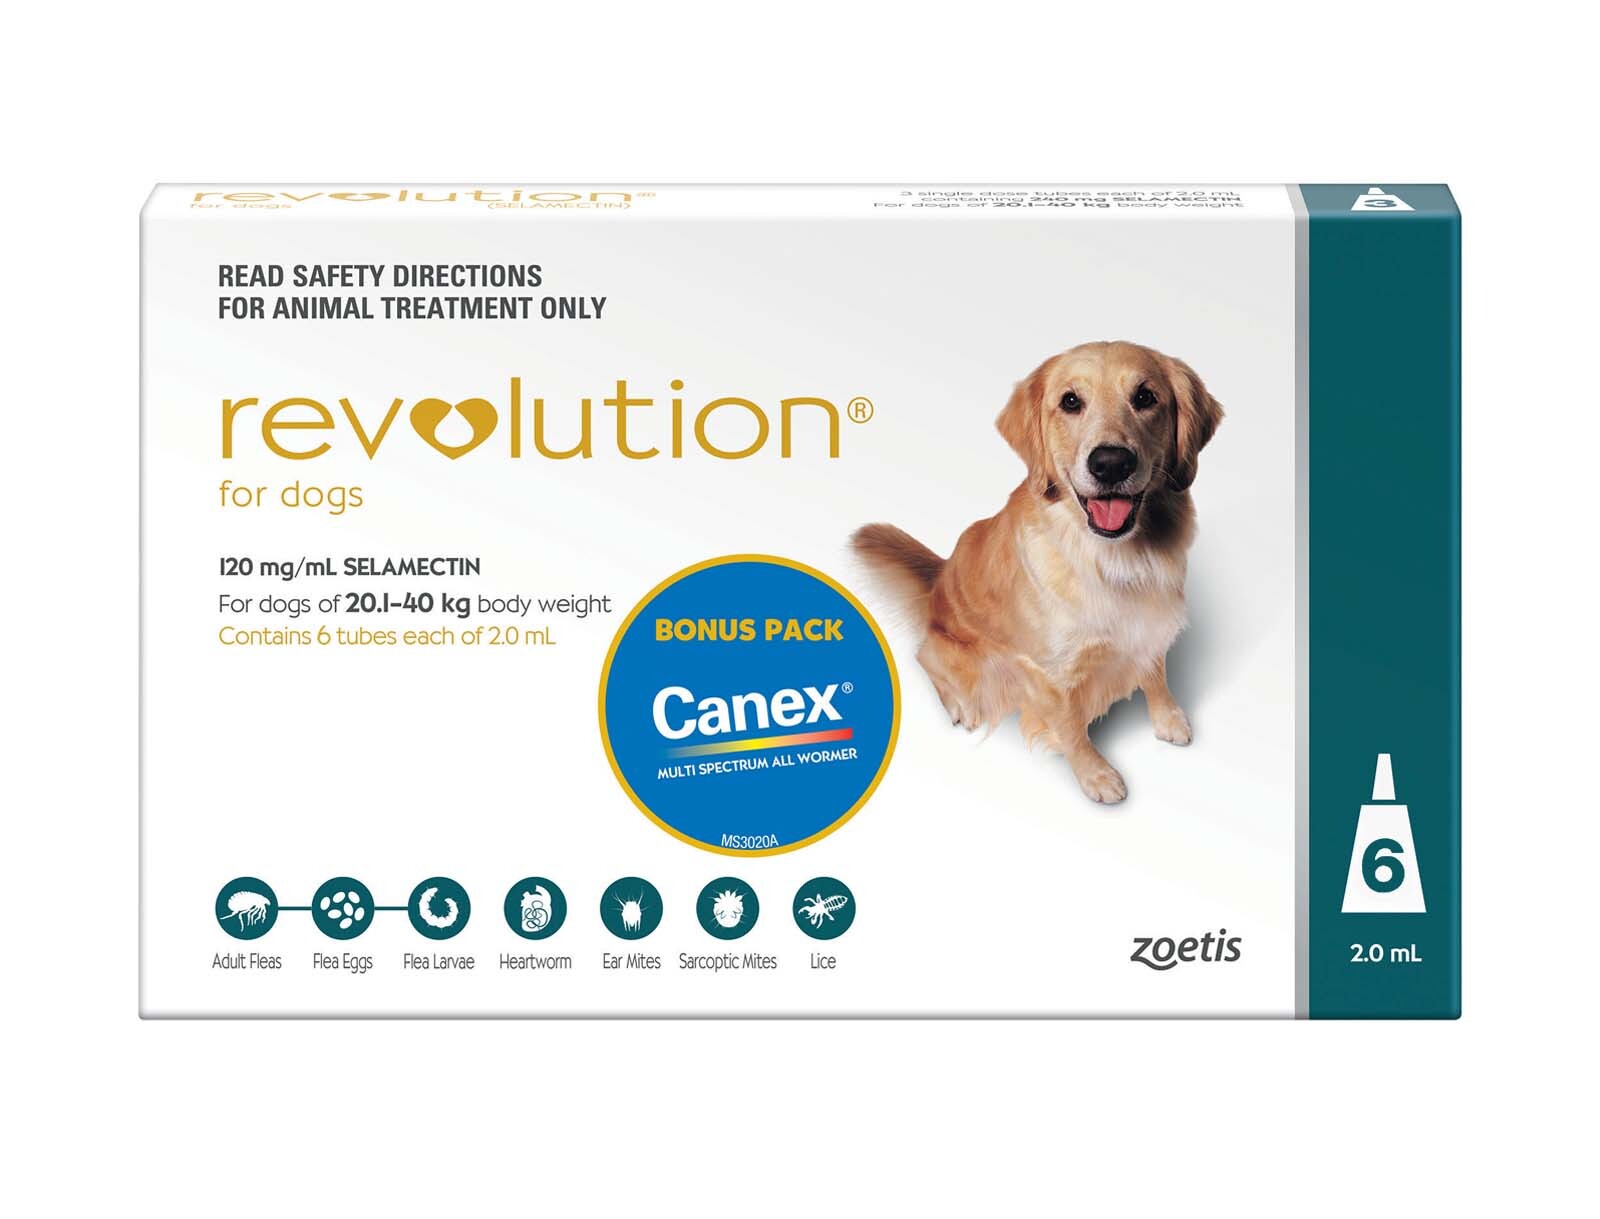 Revolution Flea Control for Dogs 20.140kg Bonus Canex All